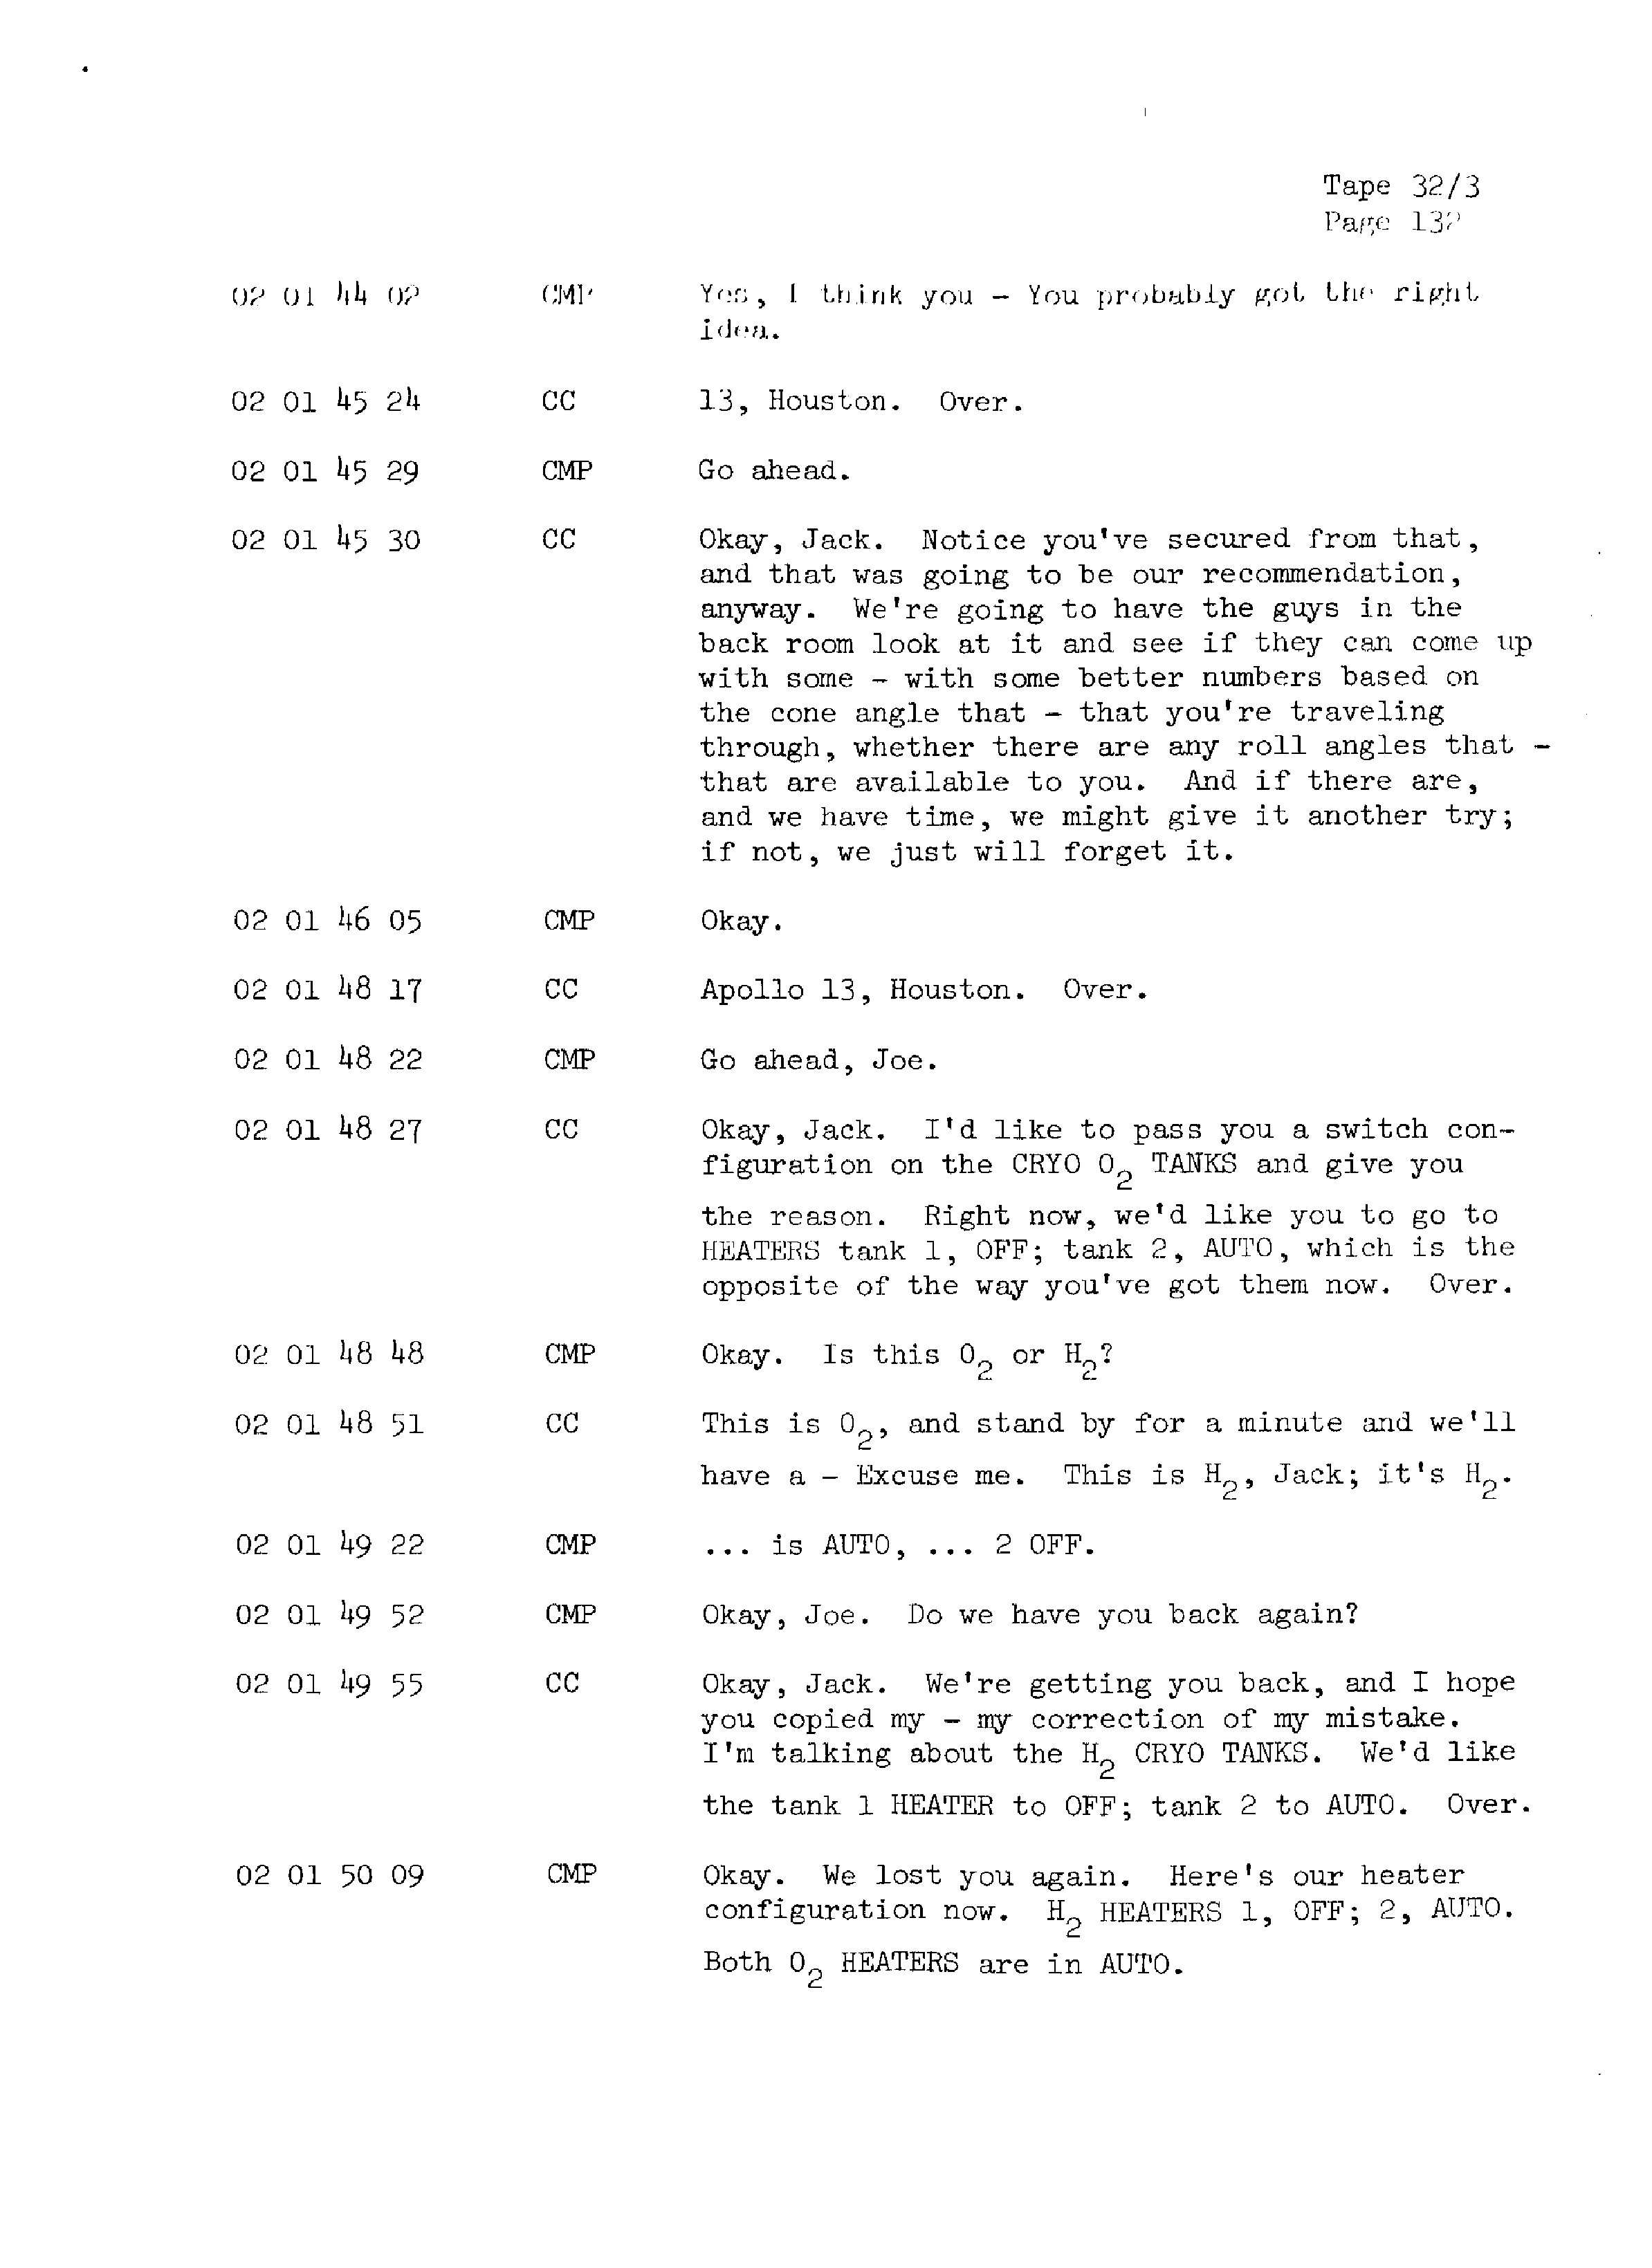 Page 139 of Apollo 13’s original transcript